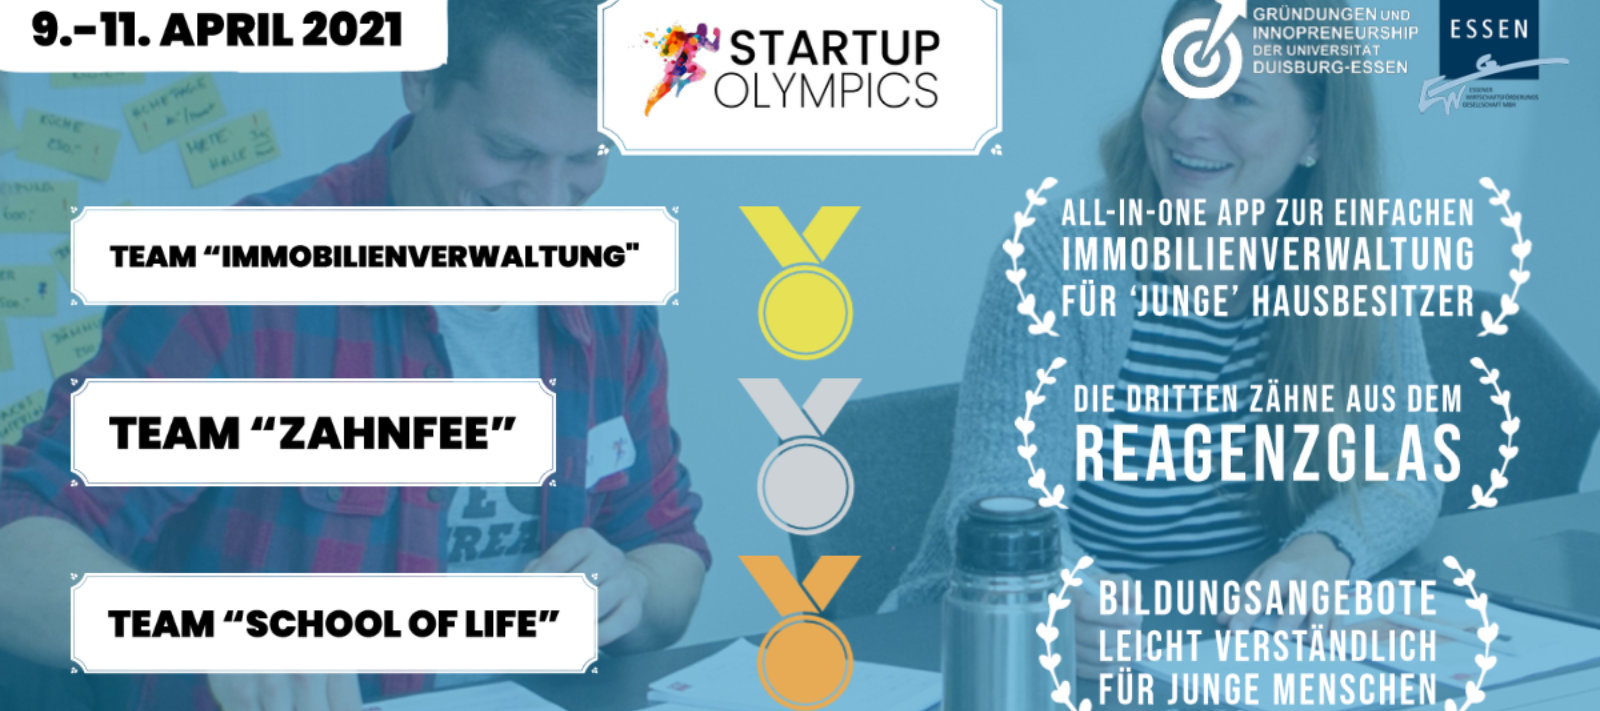 Startup-Essen – STARTUP OLYMPICS: Aus innovativen Ideen werden spannende Start-up-Konzepte